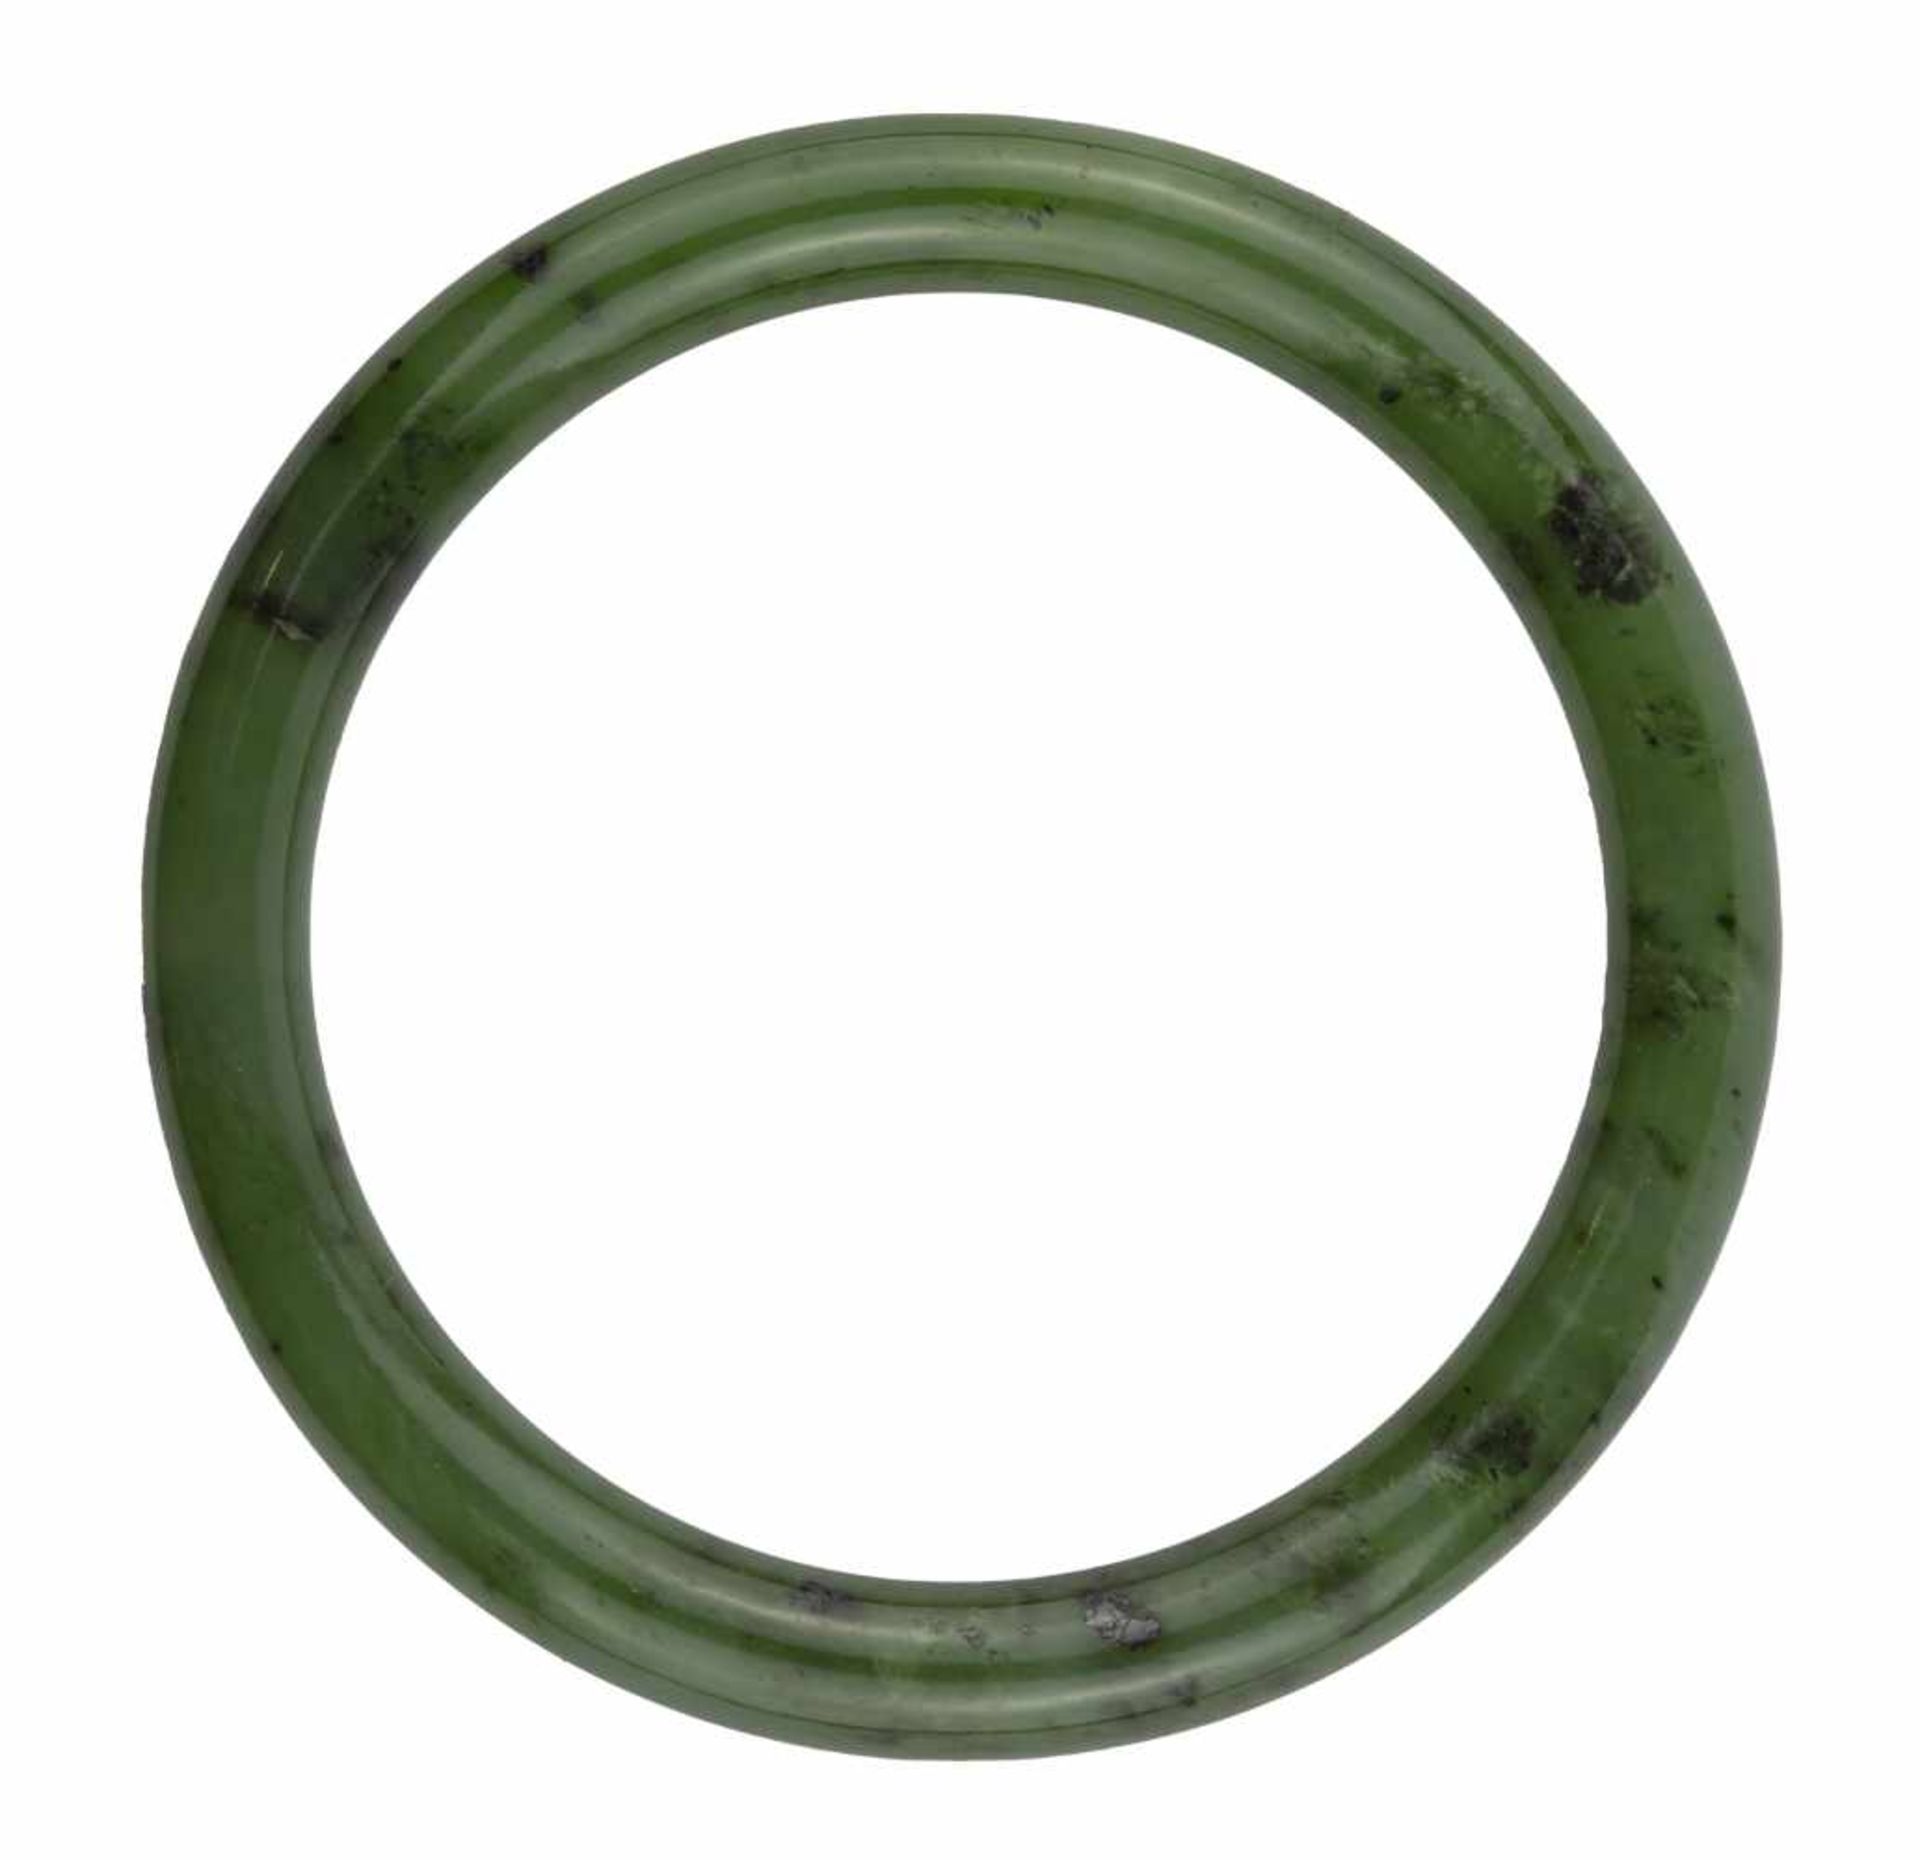 BRACELET JONC RIGIDEEn jade néphrite couleur vert.Poids : 44,5 gr - Diamètre : 6,5 cm</